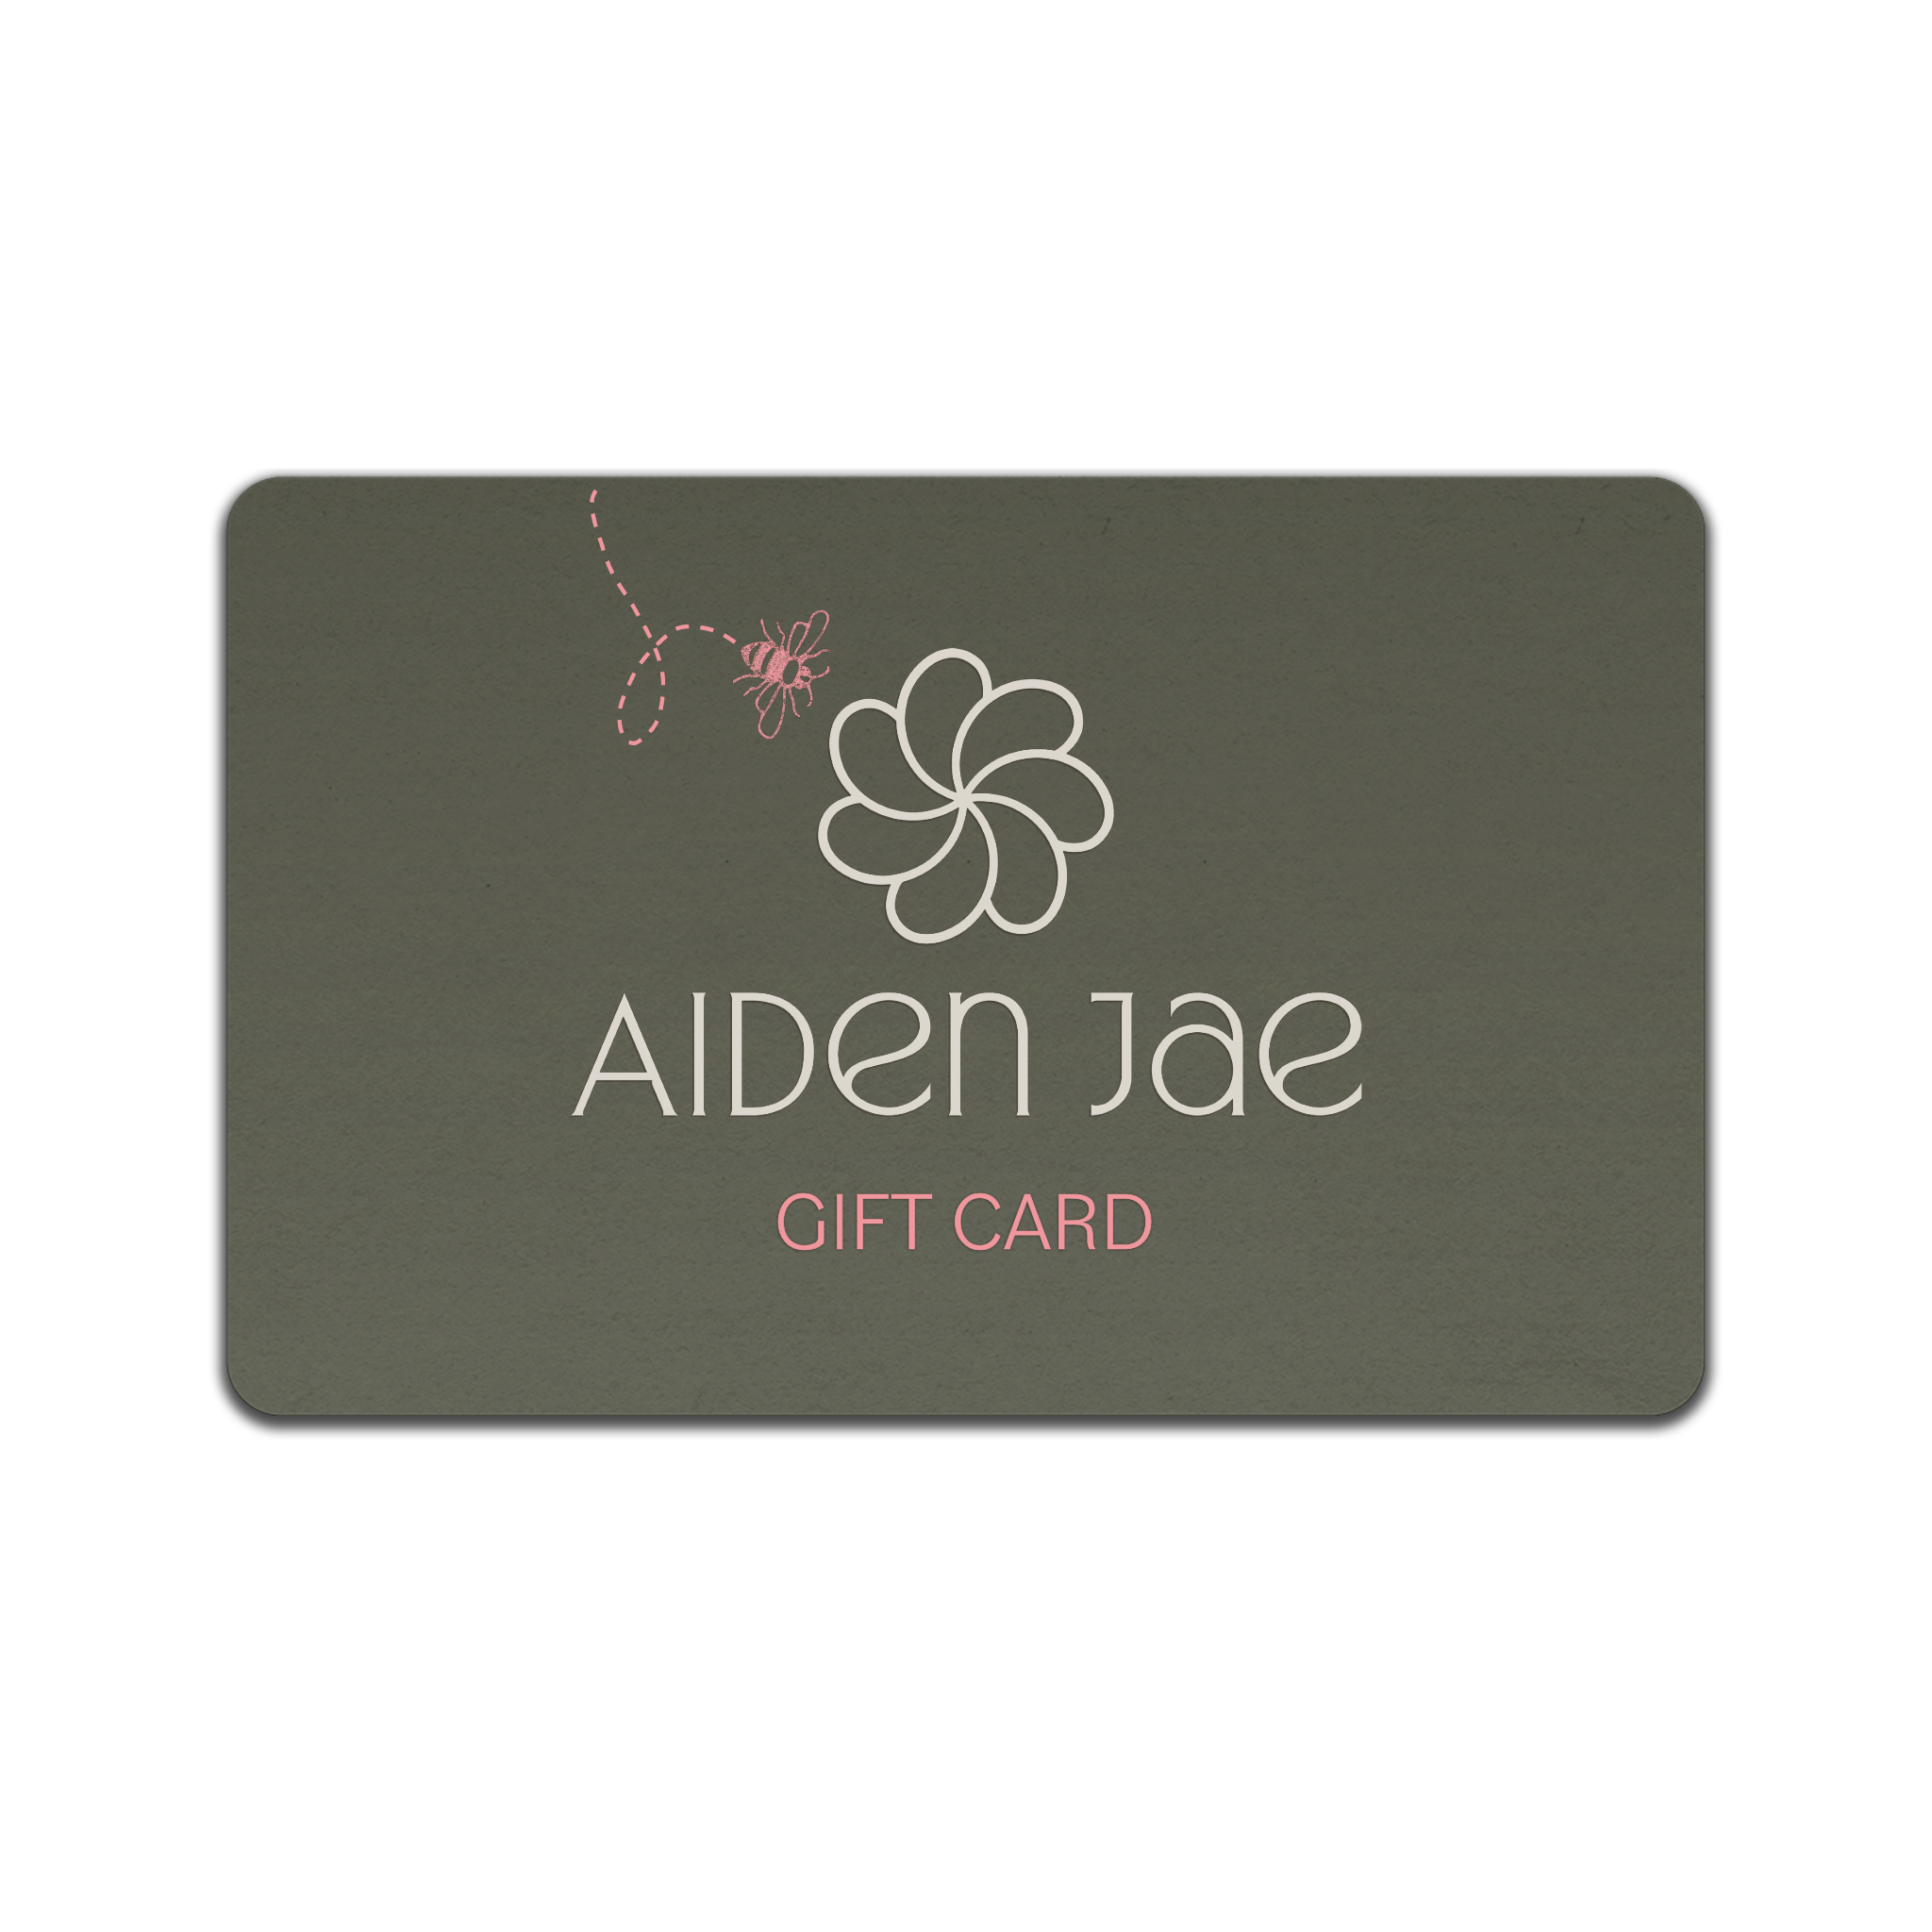 Aiden Jae gift card.